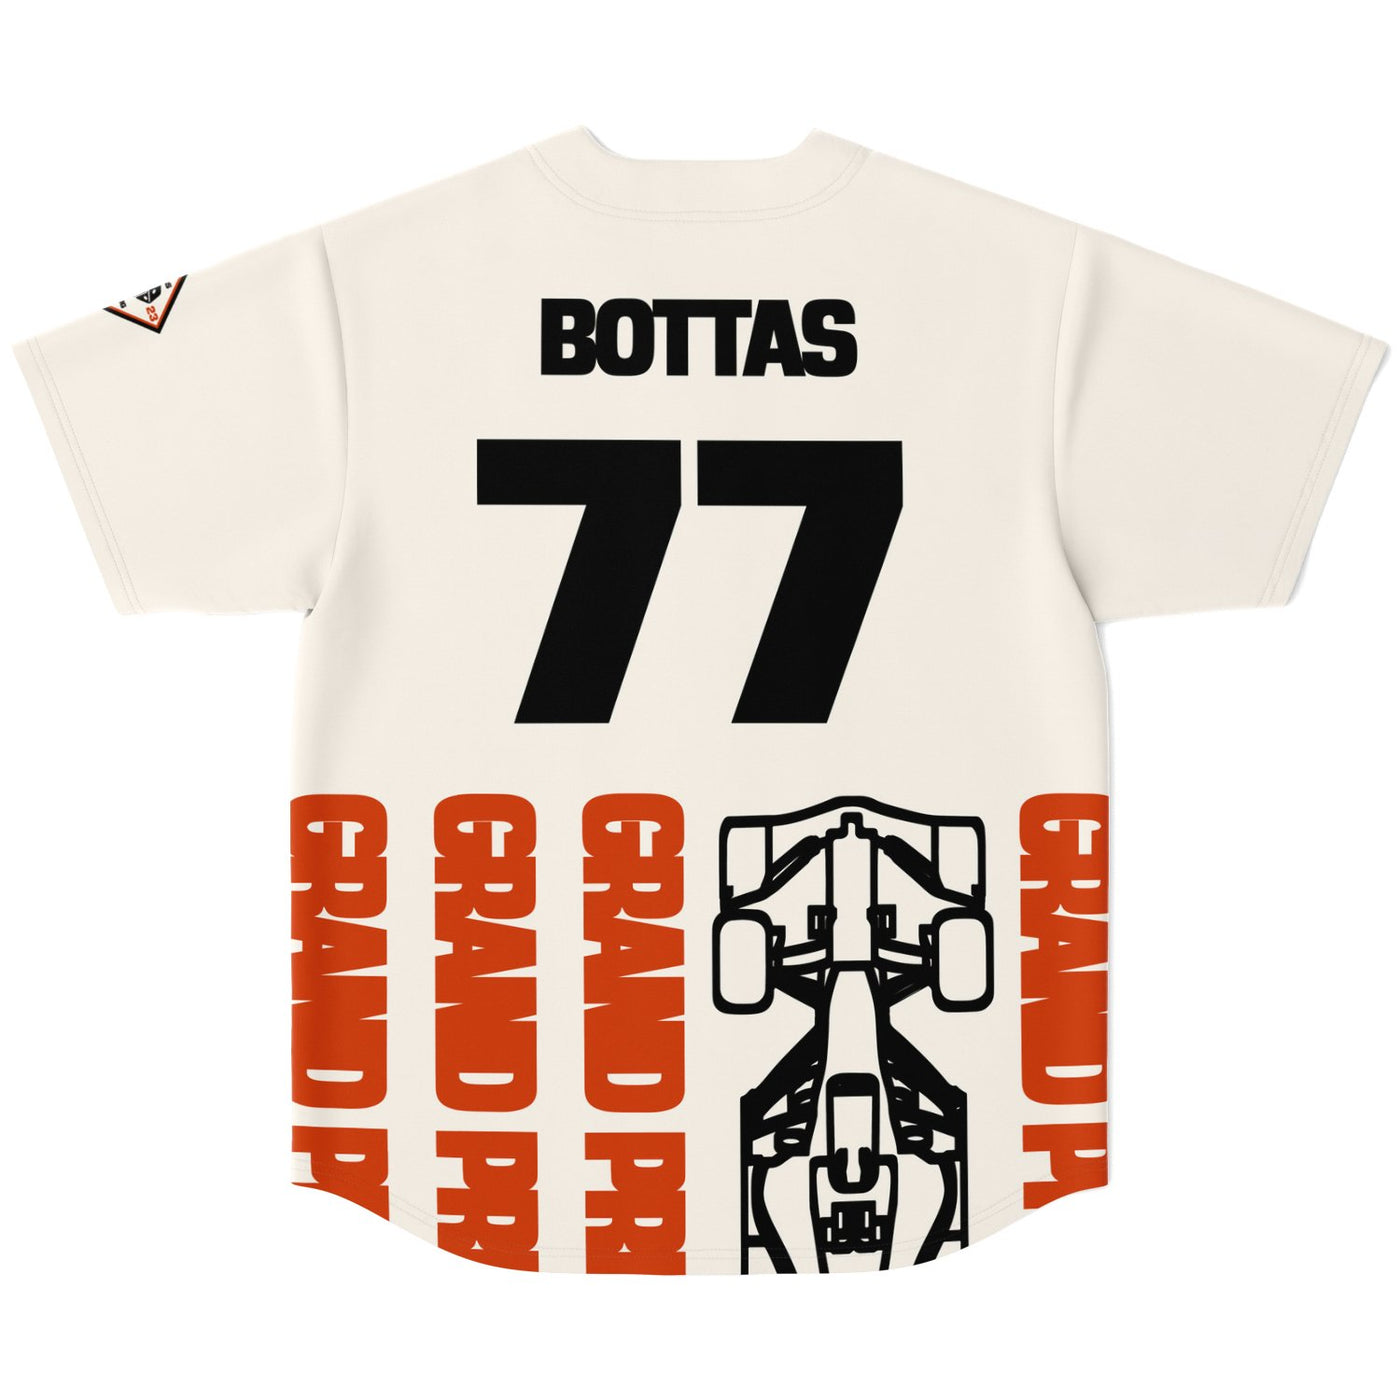 Bottas - Vegas Street Circuit Jersey - Furious Motorsport